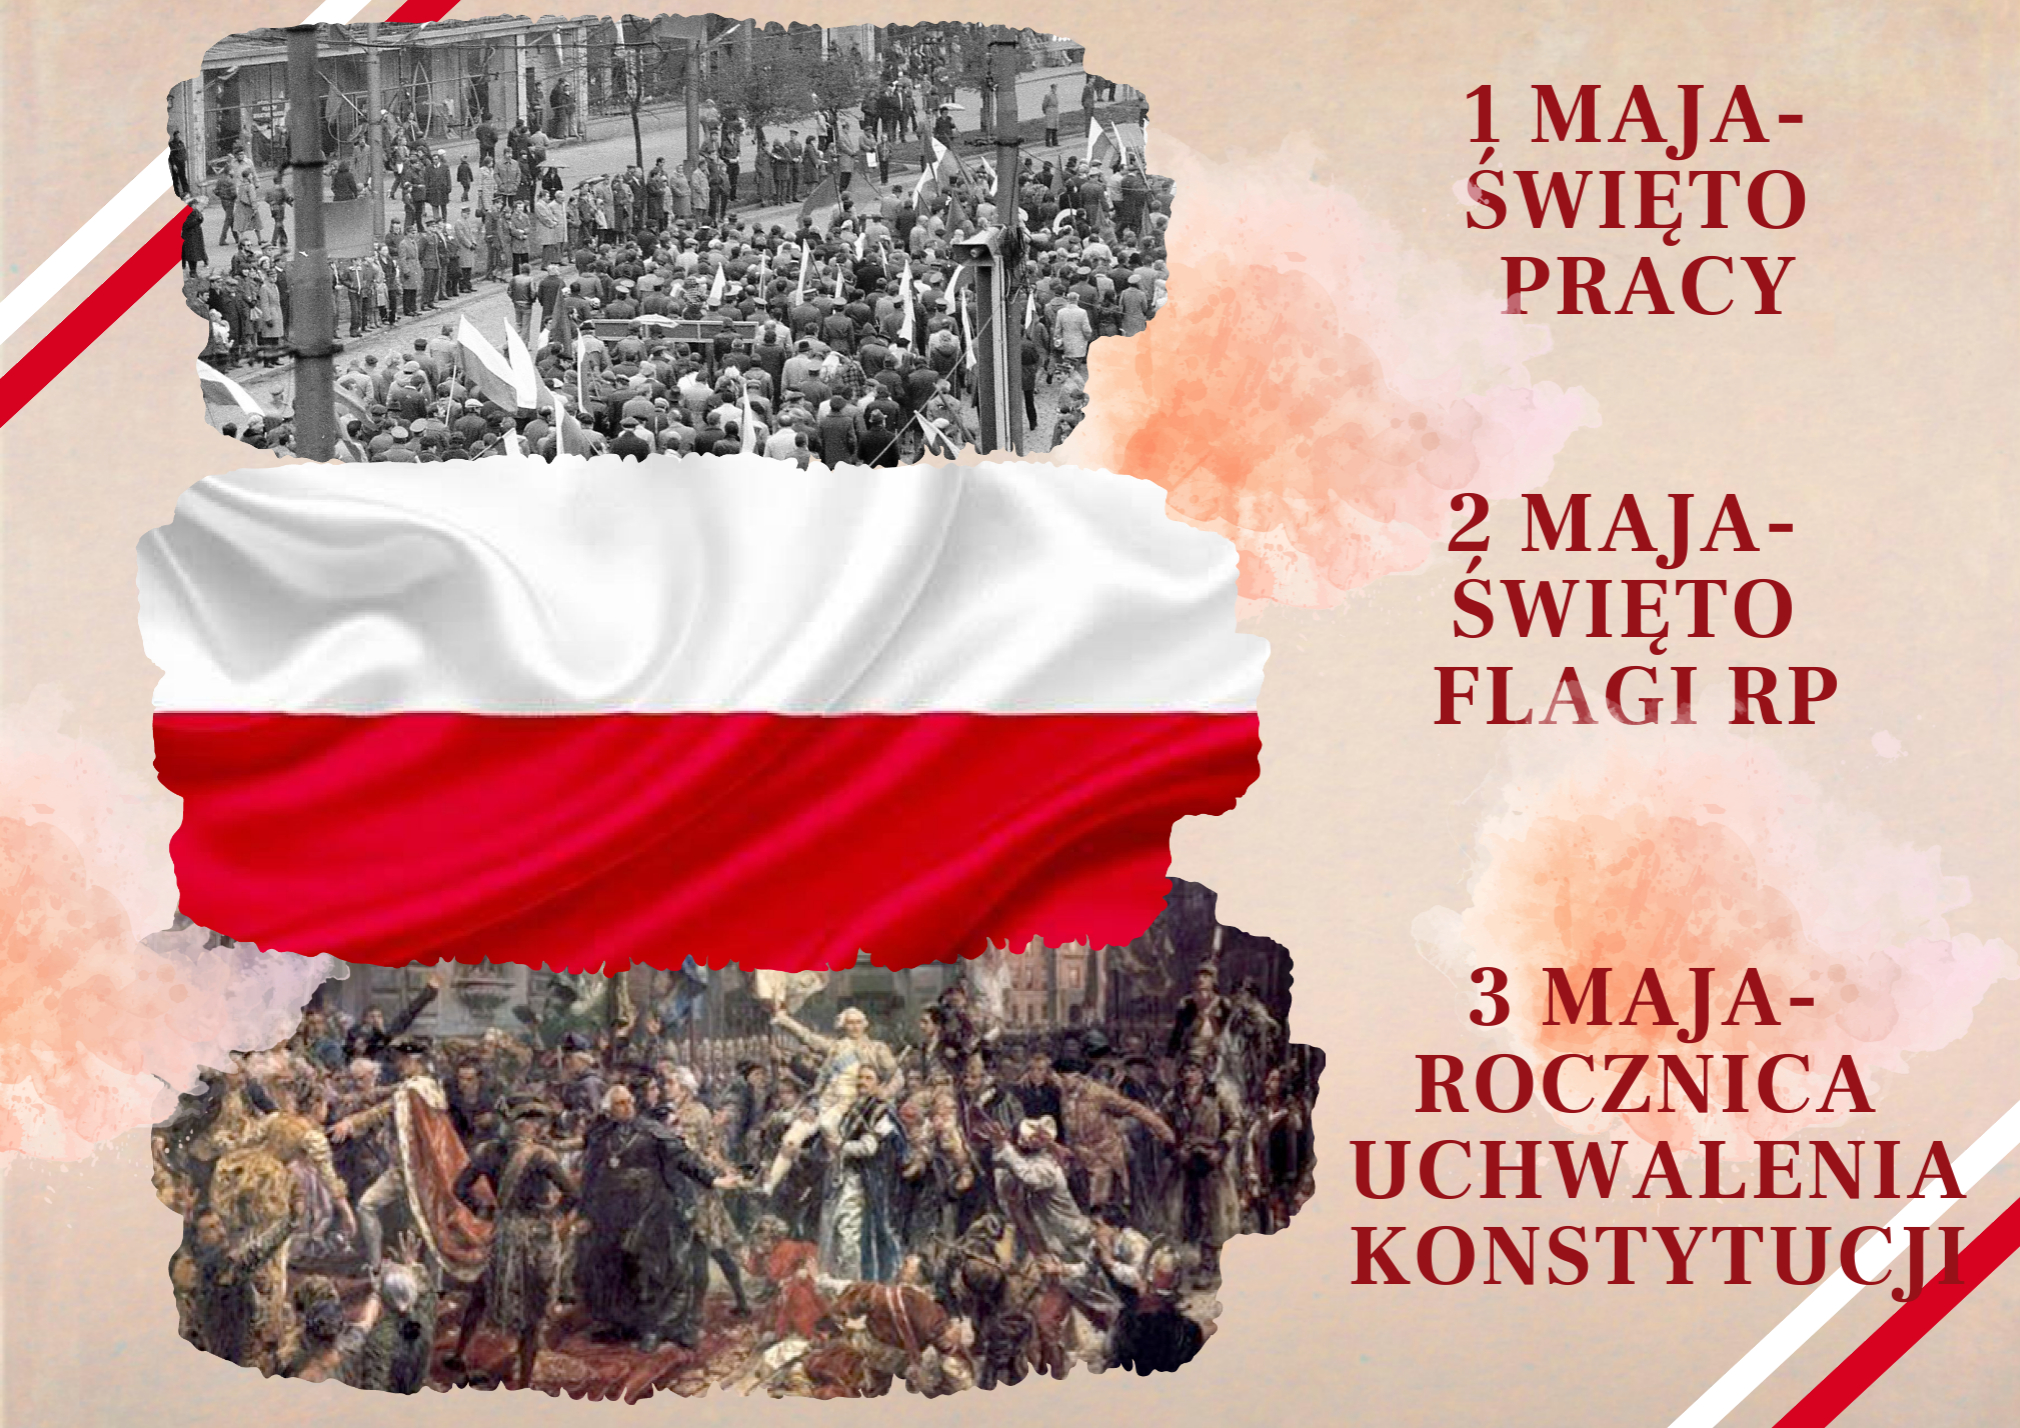 kremowe tło, z lewej strony od góry zdjęcie z pochodu z roku 1982, w środku zdjęcie flagi Polski i pod spodem zdjęcie obrazu J. Matejki "Konstytucja 3 maja 1791 roku"- obok obrazów po prawej stronie napisy: 1 maja - Święto Pracy, 2 maja Święto Flagi RP, 3 maja- Rocznica Uchwalenia Konstytucji